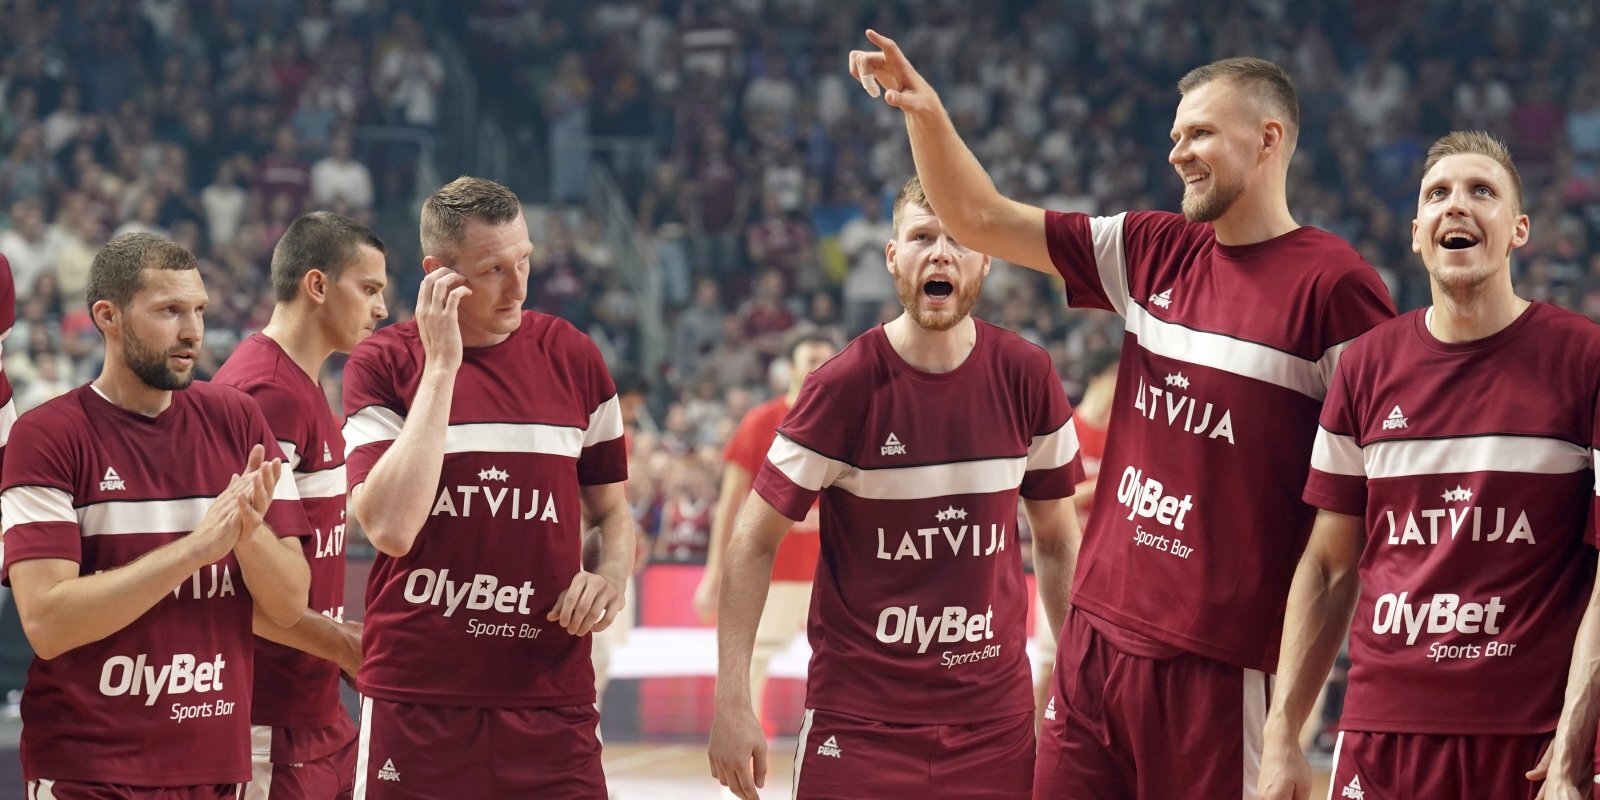 Raimonds Rudzāts: Sviniet tā, lai nav paģiru! Novēlējums Latvijas basketbolam